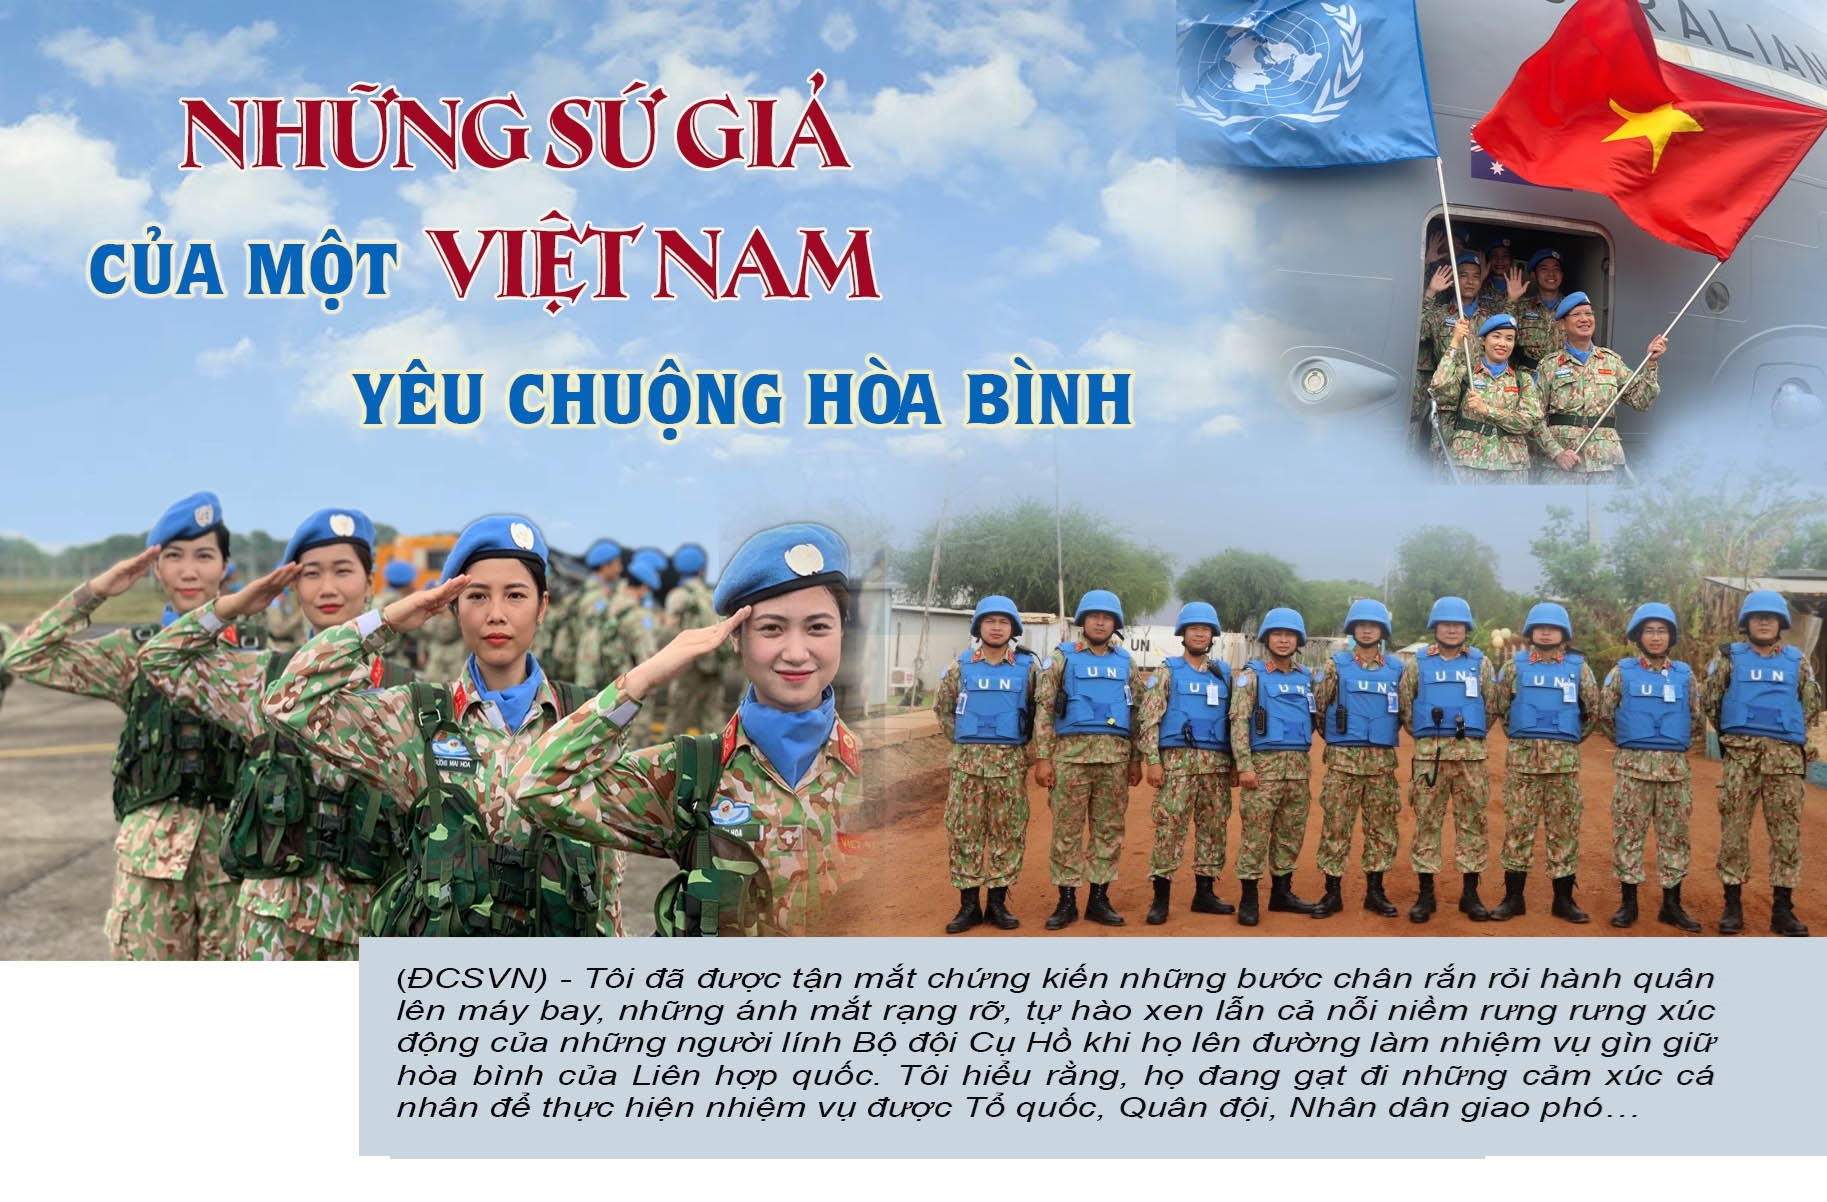 Những người công binh Việt Nam đóng một vai trò quan trọng trong việc phát triển kinh tế và xã hội của đất nước. Họ là những chủ nhân của những kỳ tích công nghiệp, tạo nên sự phát triển mạnh mẽ cho đất nước. Hãy xem ảnh liên quan để khám phá thêm về những công binh, người mẫu và những lợi ích họ mang lại cho xã hội.